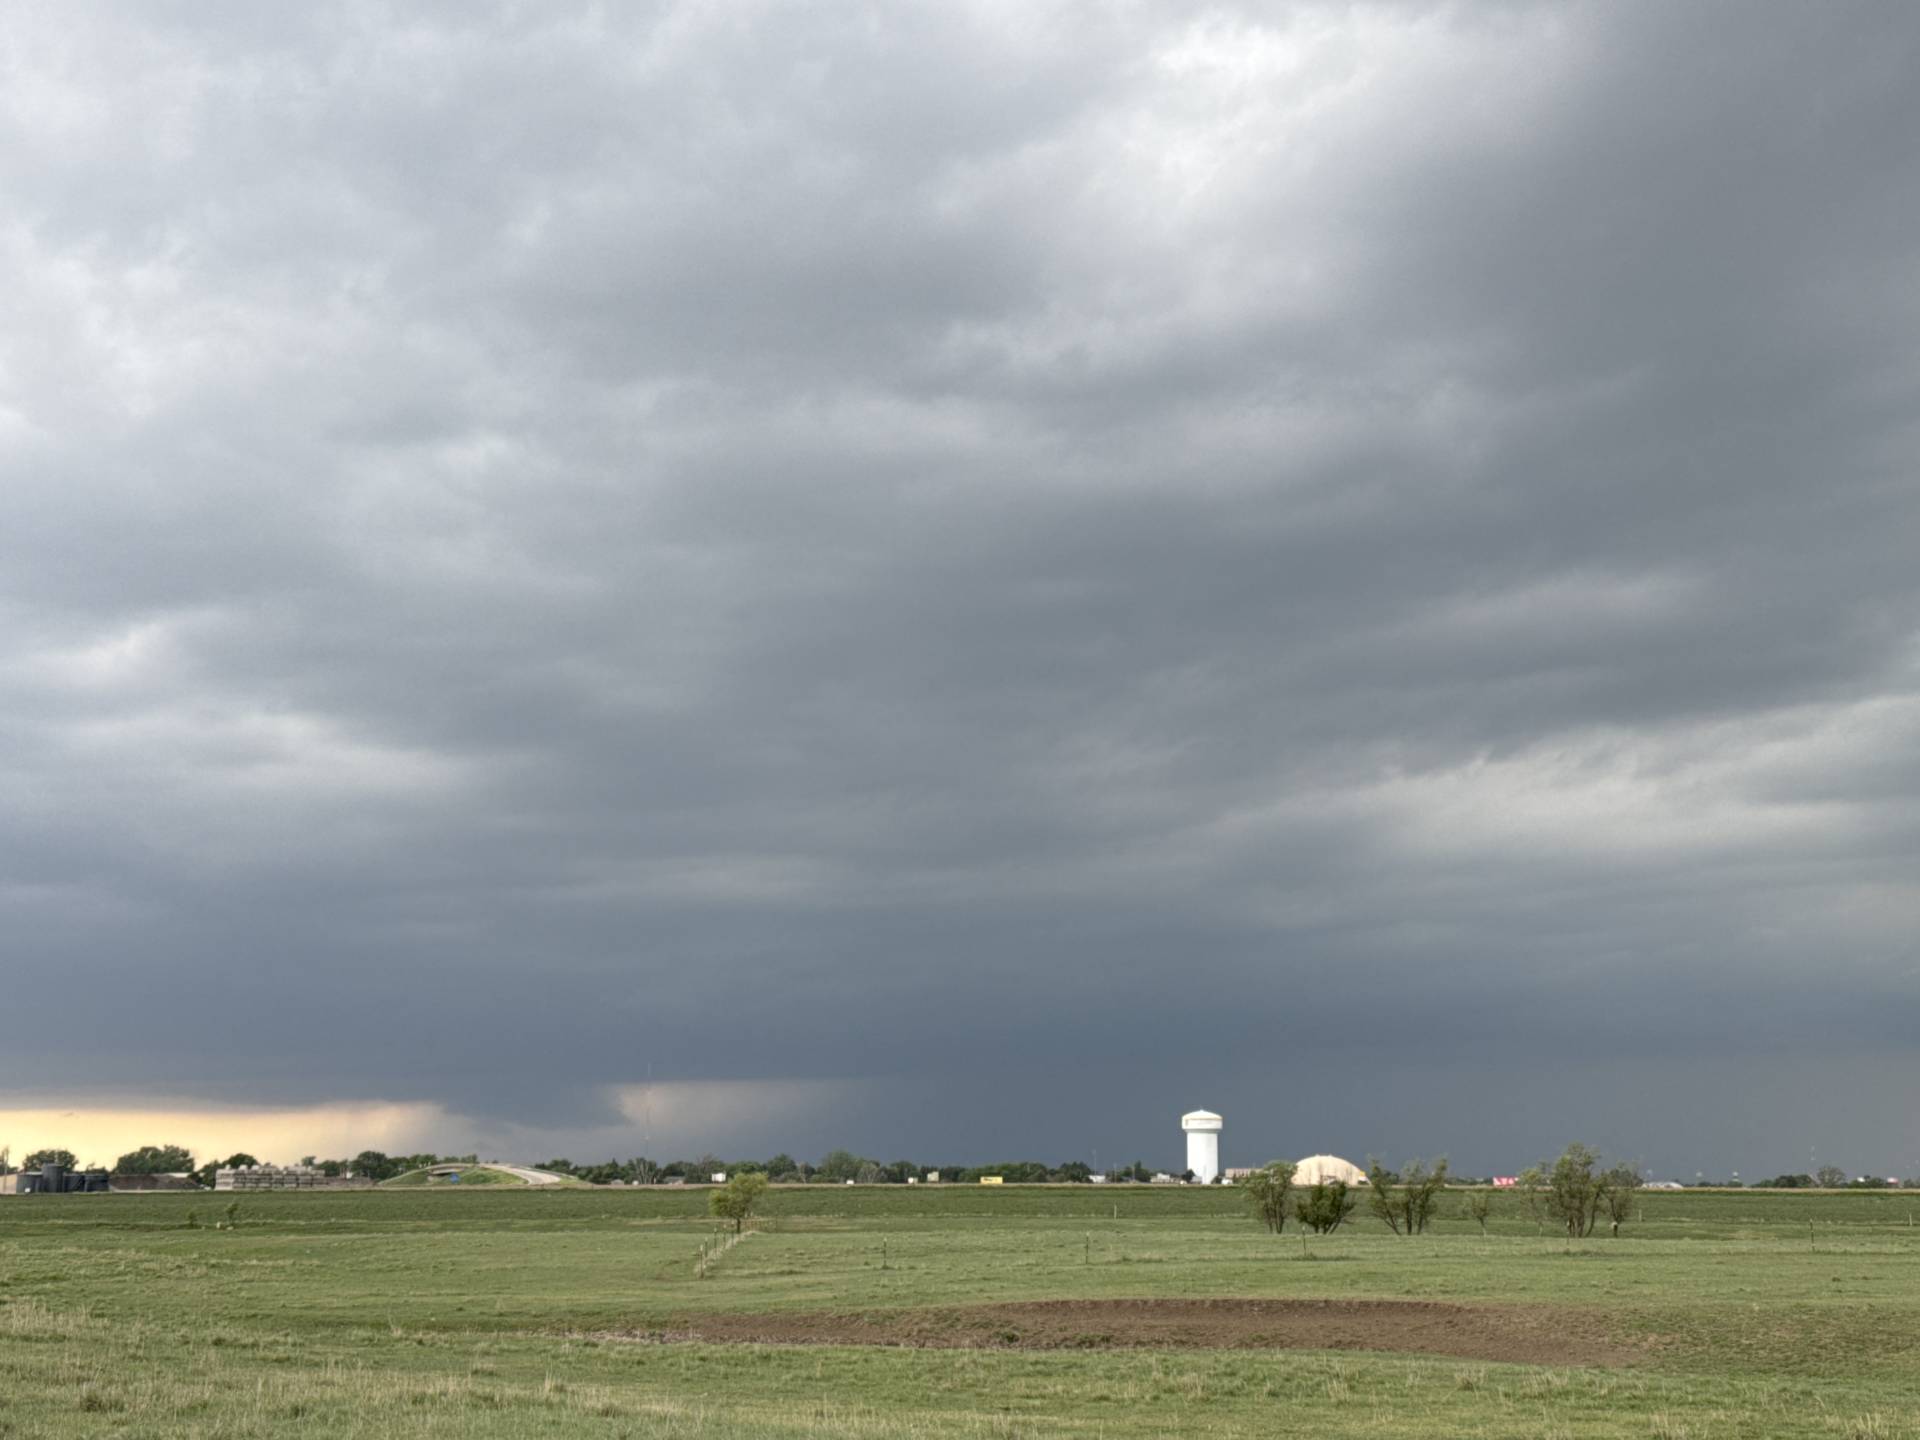 Lowering on severe warned supercell moving over Hays, KS 02:15 PM @NWSDodgeCity @NWSWichita @NWSGoodland @NWSTopeka #kswx